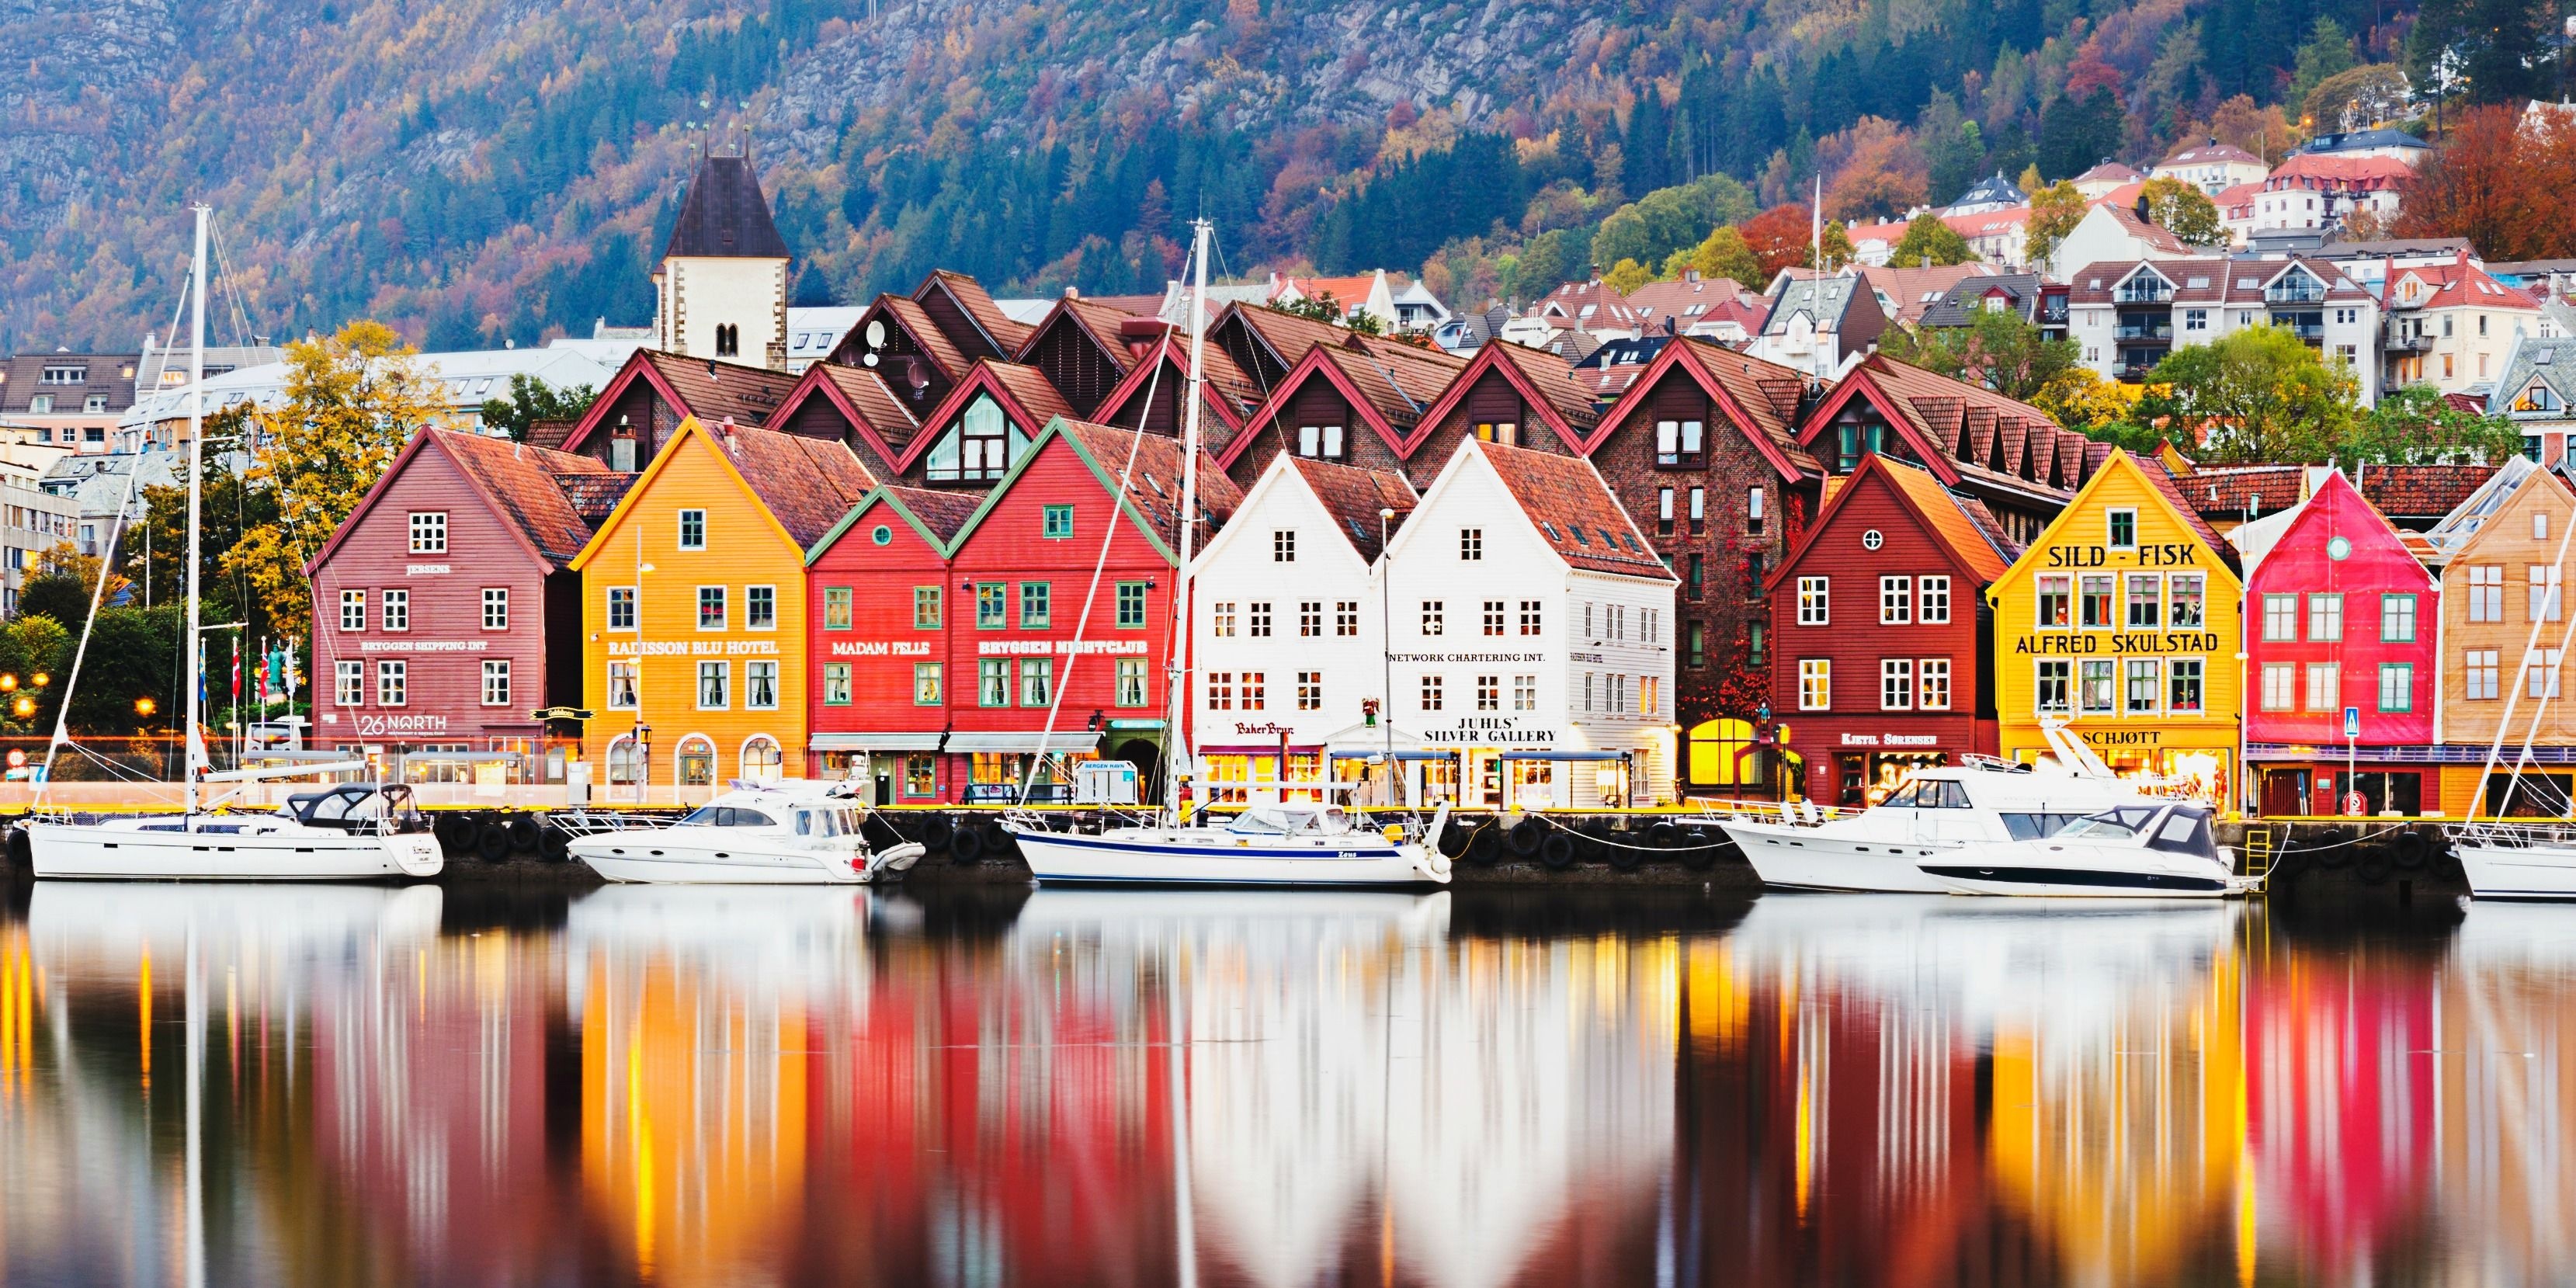 Bryggen in Bergen, Captivating photos, Norwegian charm, Picture-worthy, 3320x1660 Dual Screen Desktop